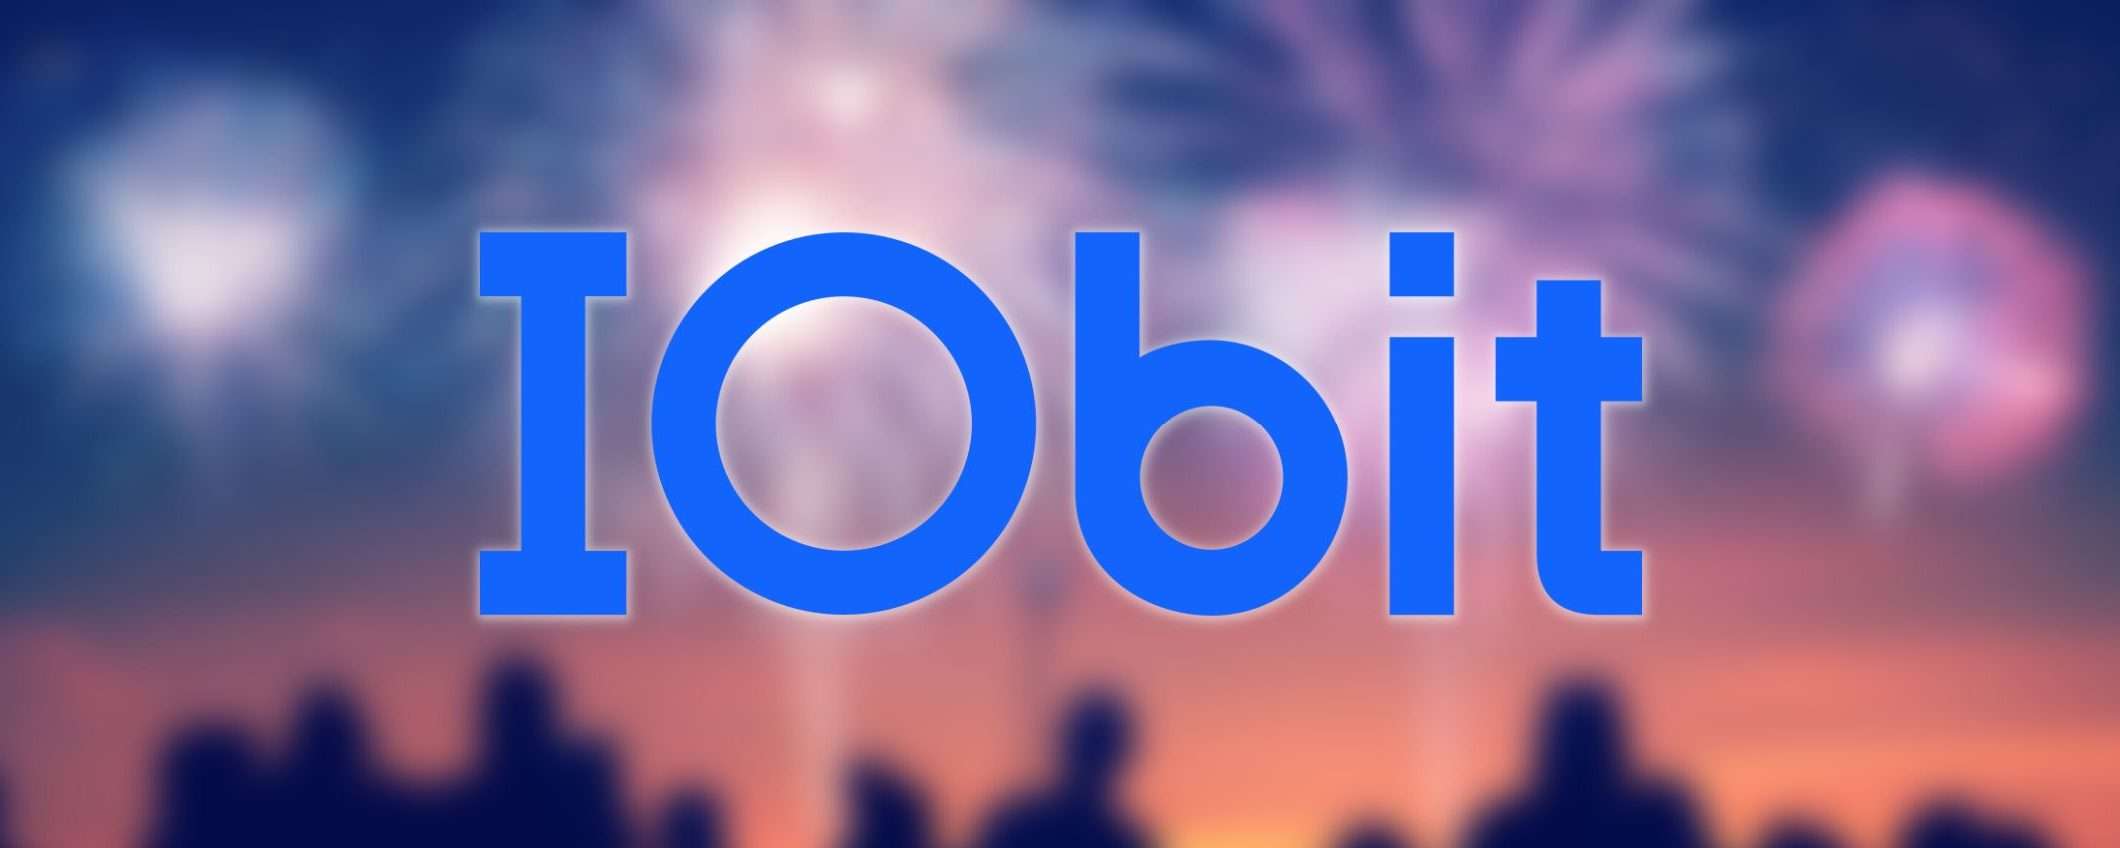 IObit: con gli sconti del nuovo anno risparmi fino a 130 euro